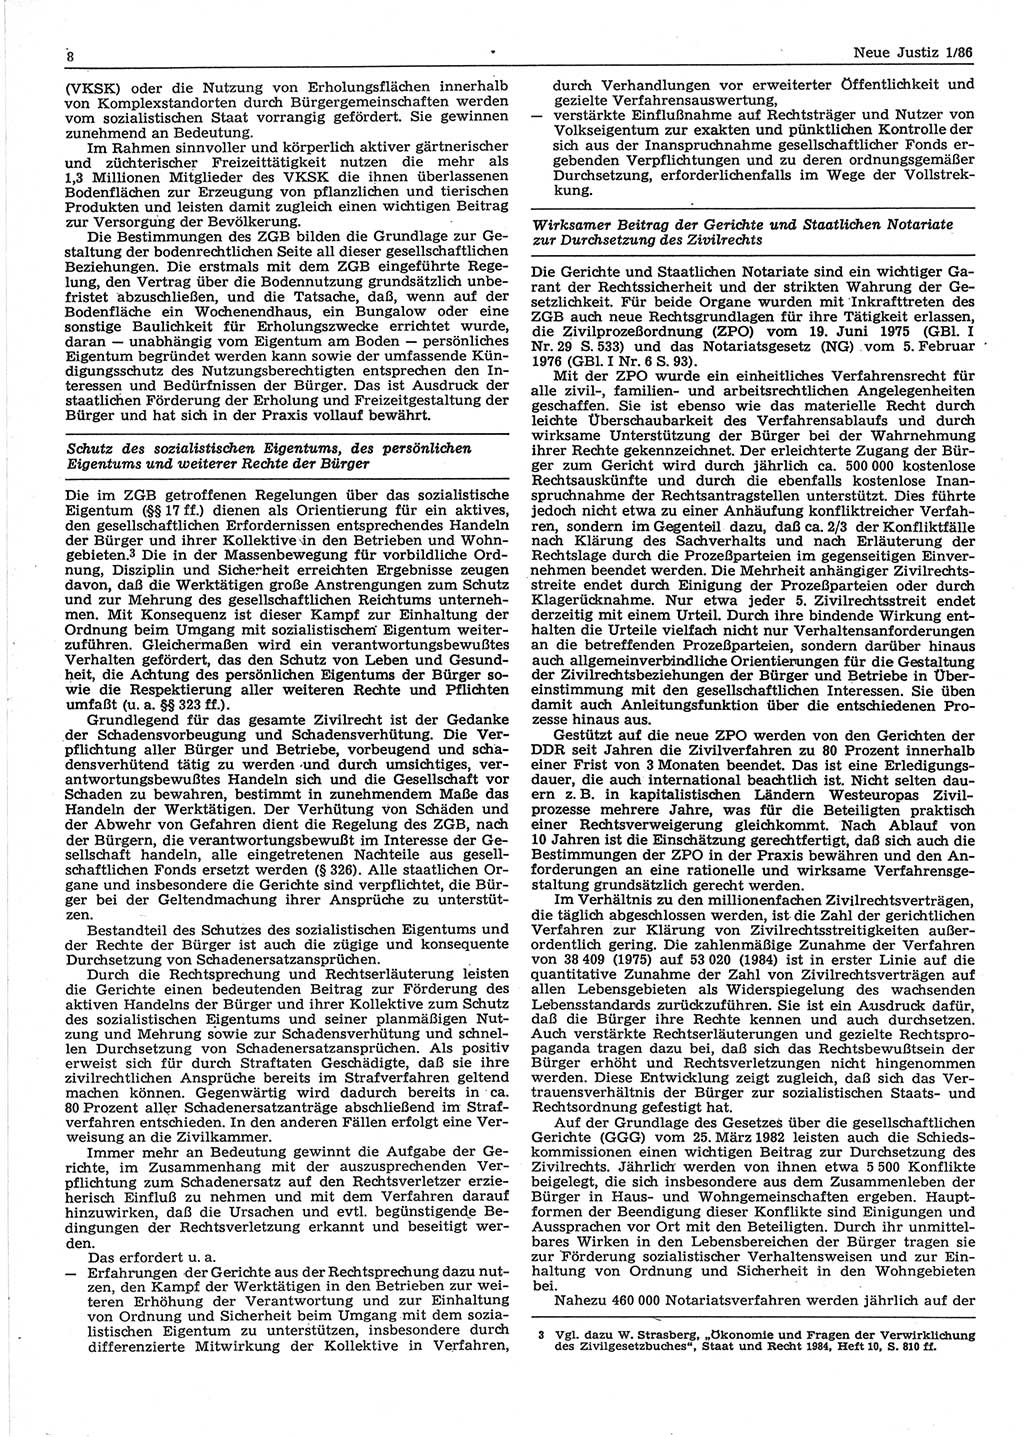 Neue Justiz (NJ), Zeitschrift für sozialistisches Recht und Gesetzlichkeit [Deutsche Demokratische Republik (DDR)], 40. Jahrgang 1986, Seite 8 (NJ DDR 1986, S. 8)